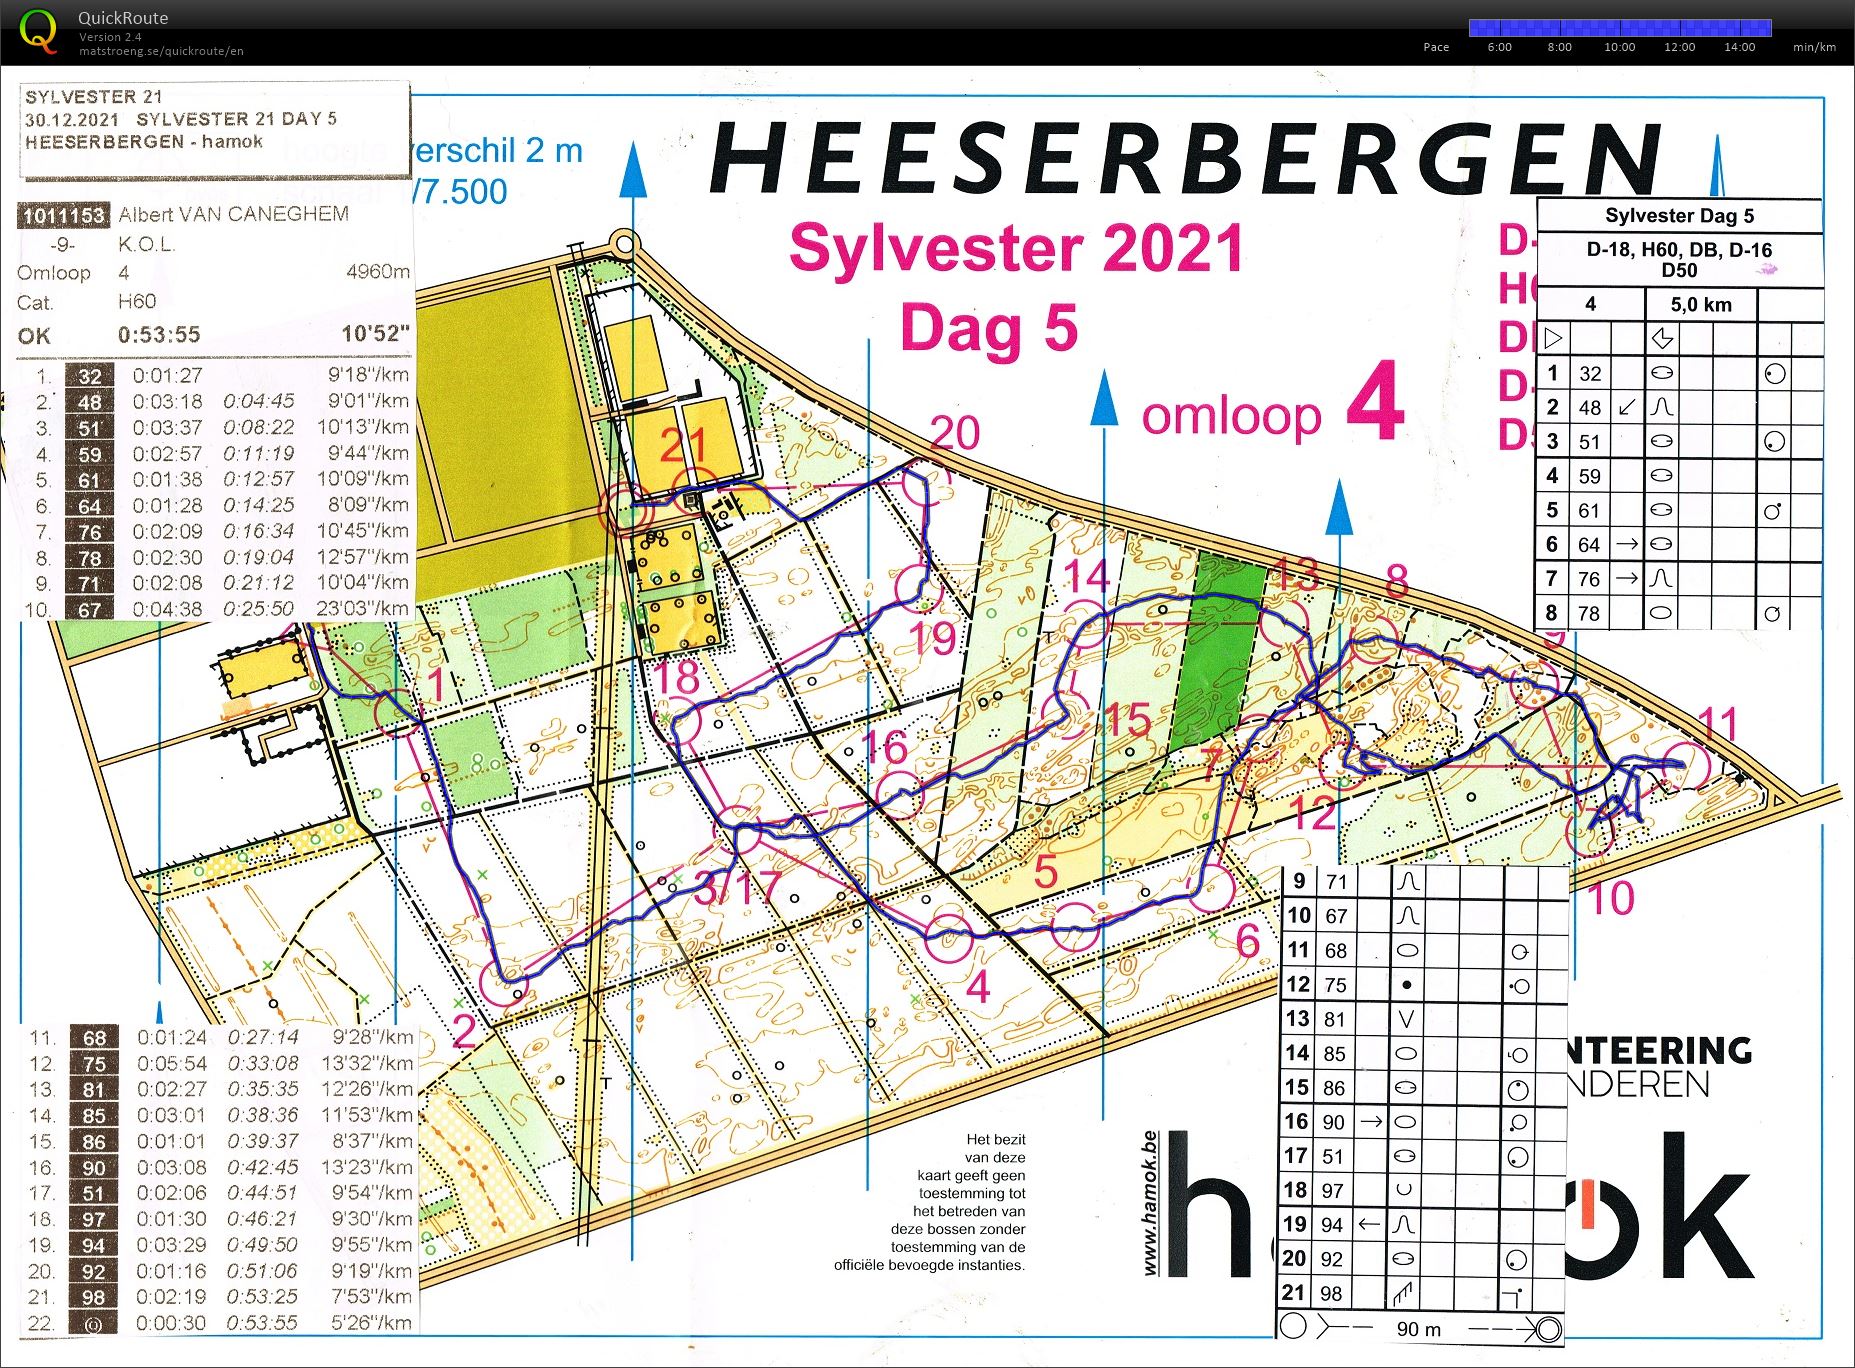 Heeserbergen (30-12-2021)